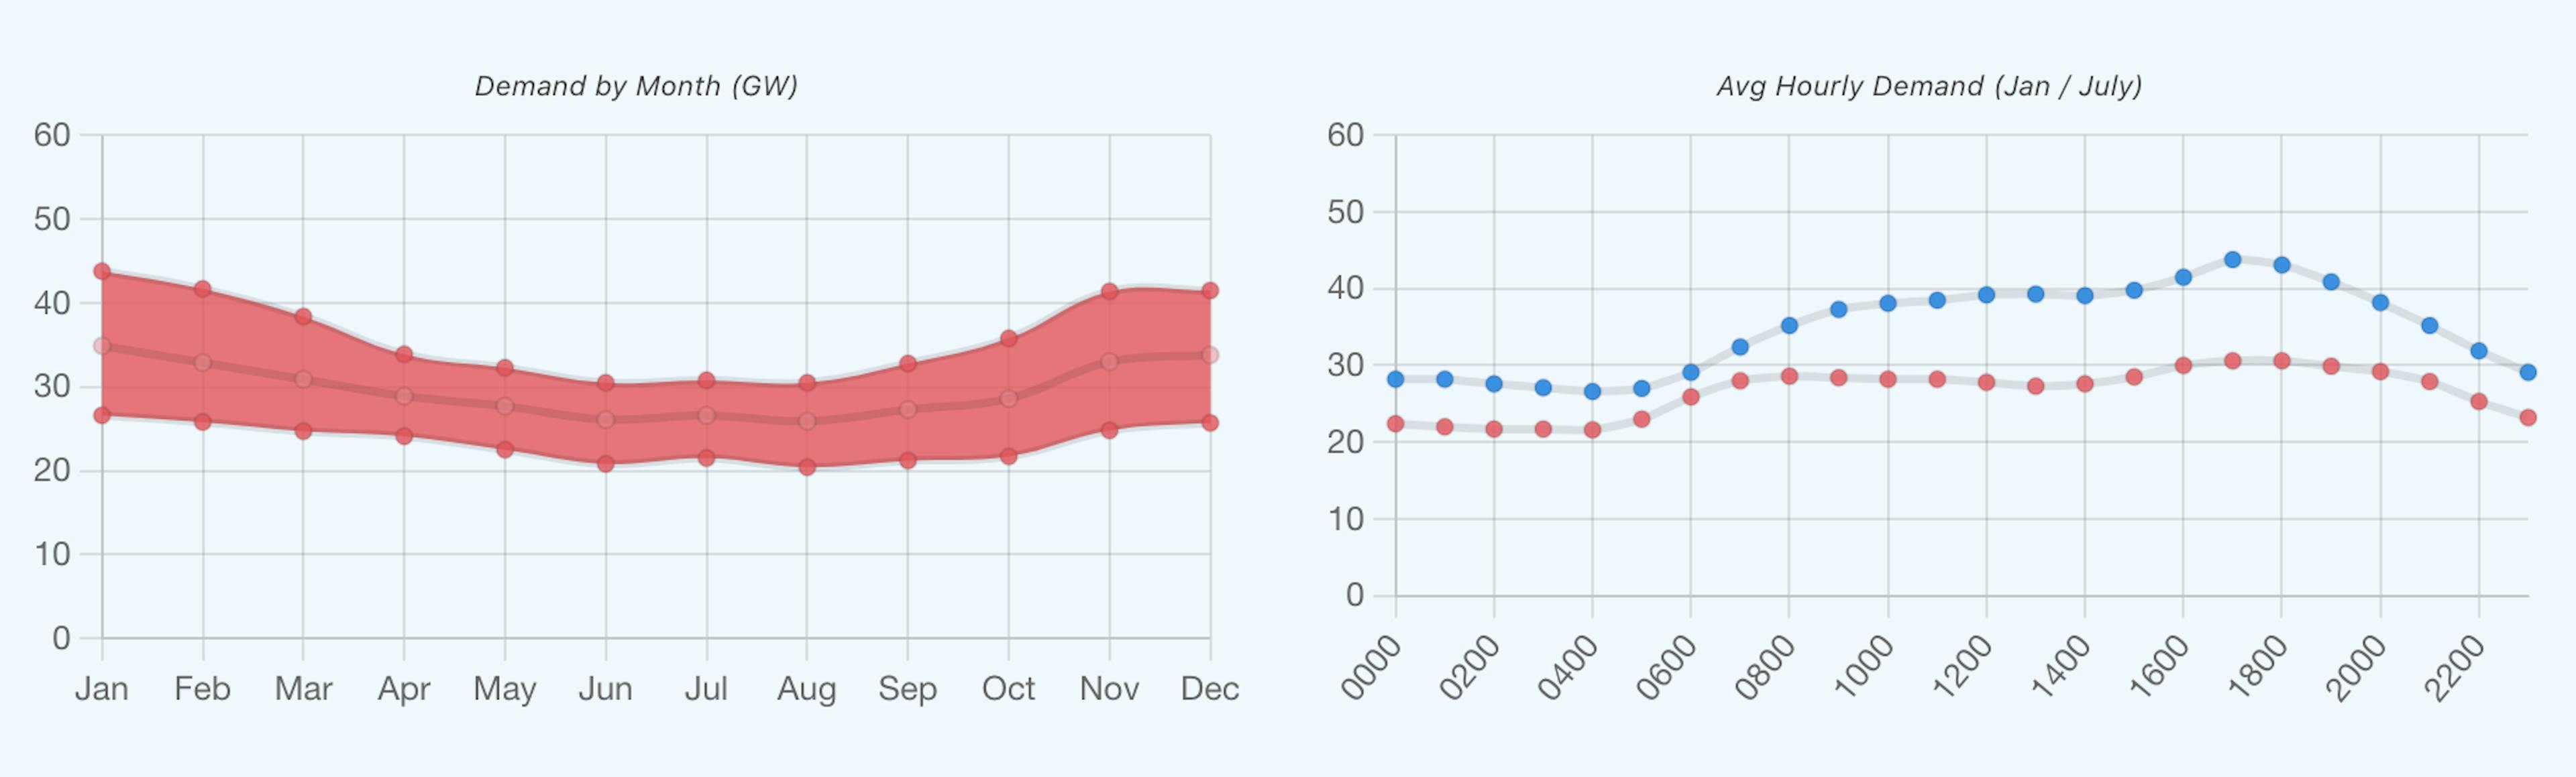 Trái: Nhu cầu điện theo tháng. Phải: thông lượng hàng giờ vào tháng 1 (màu xanh lam) so với tháng 7 (màu đỏ)